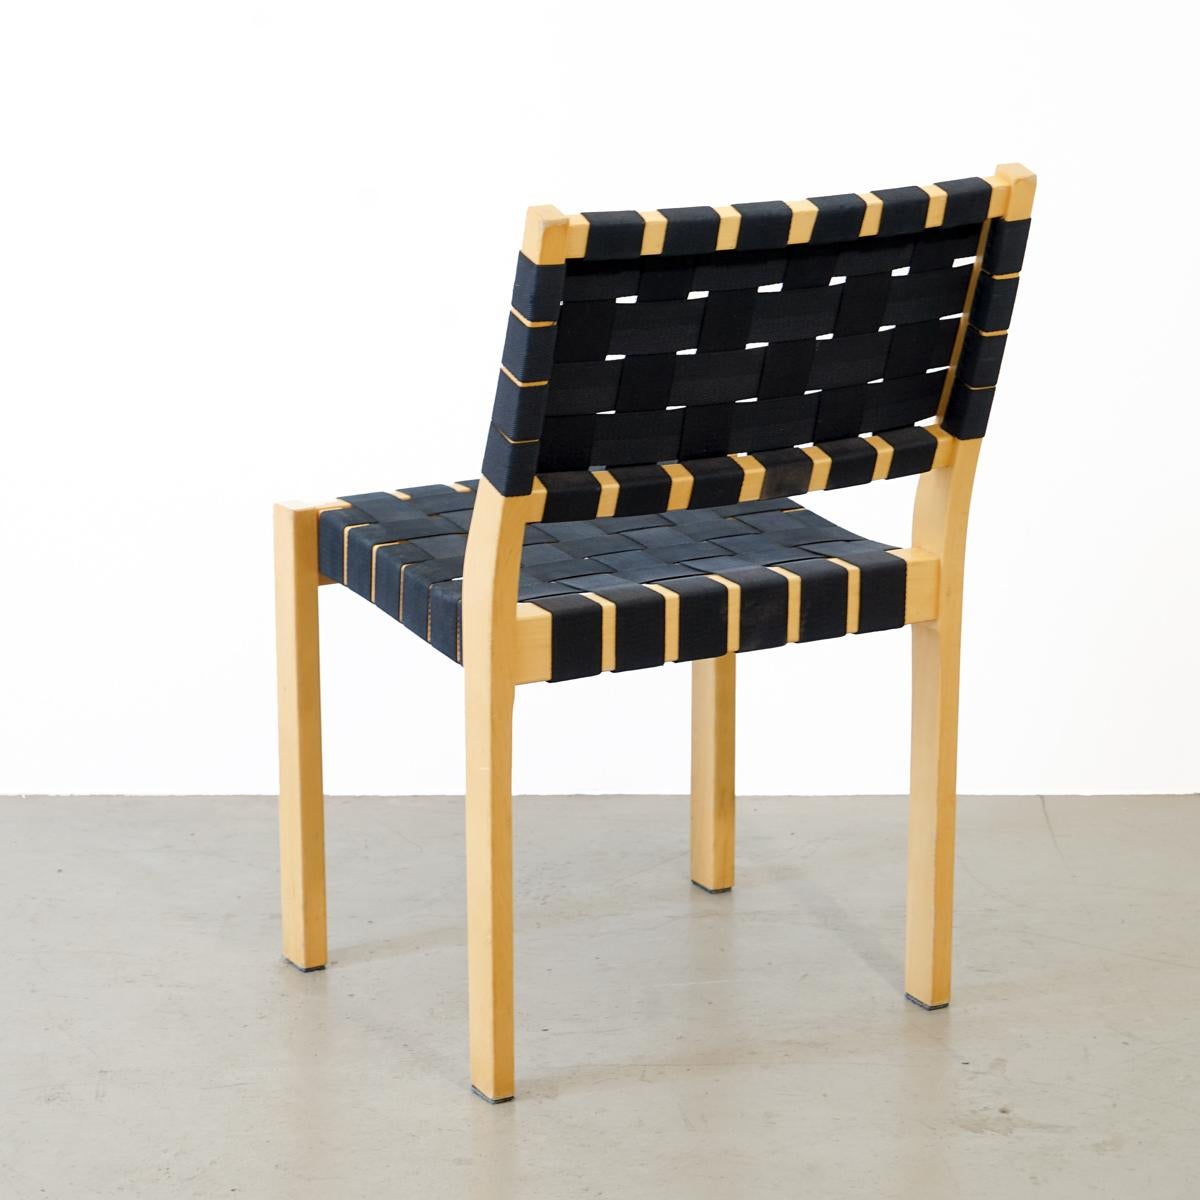 Finnish Set of 4 Chair, Model 611, Alvar Aalto for Artek